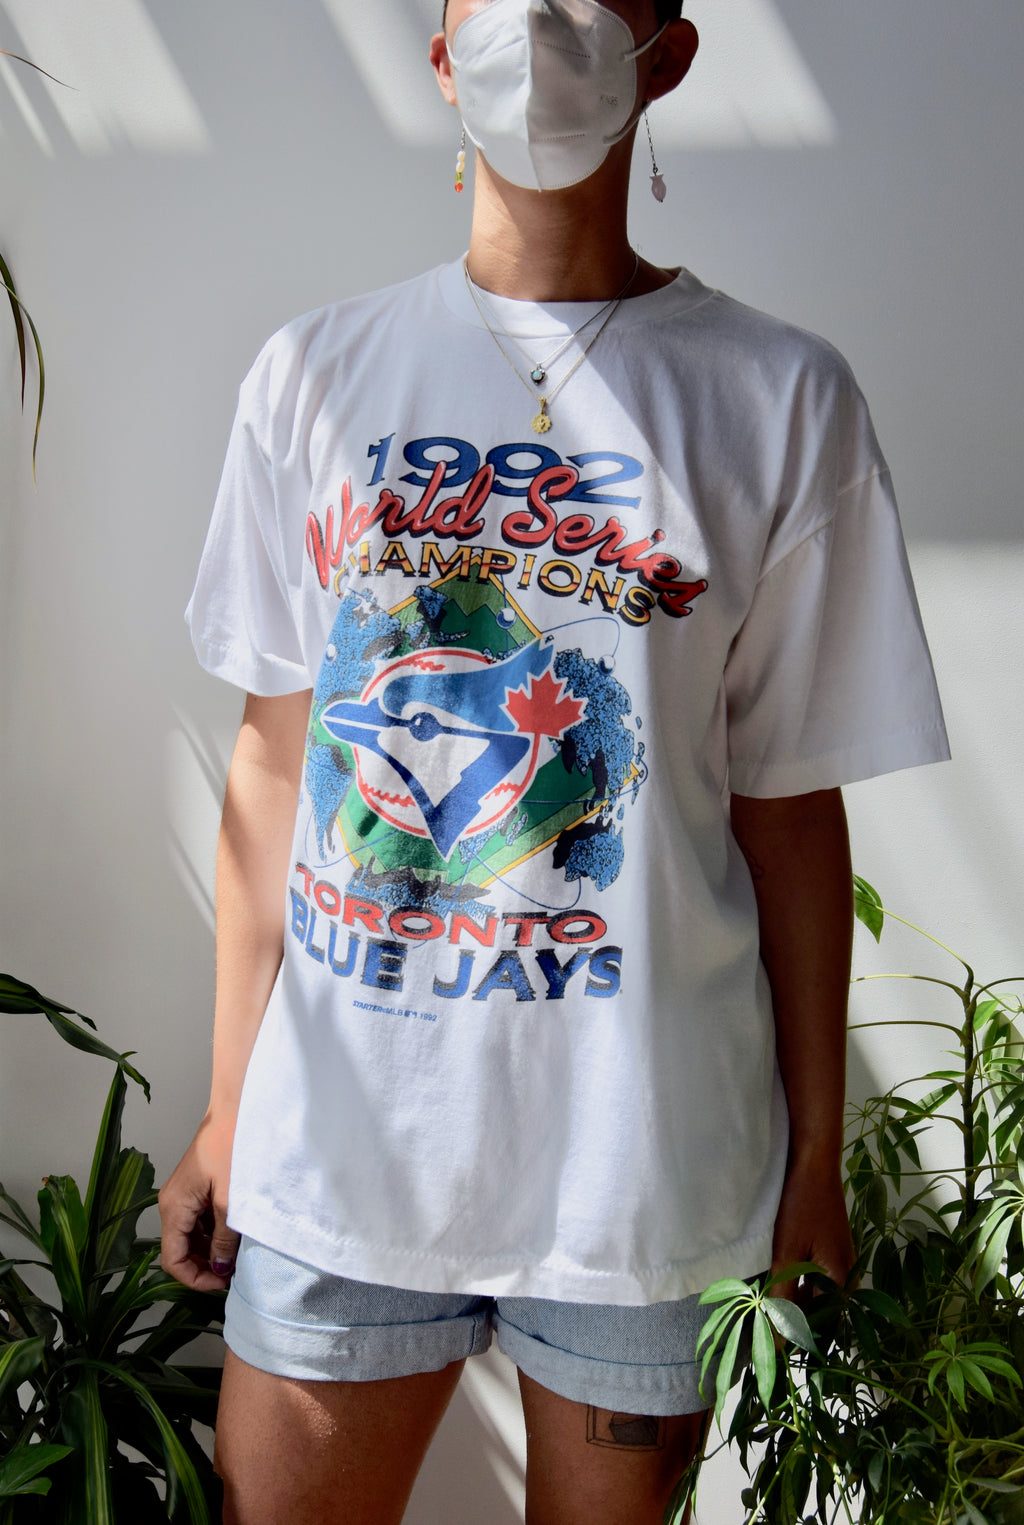 1992 Blue Jays World Series Tee